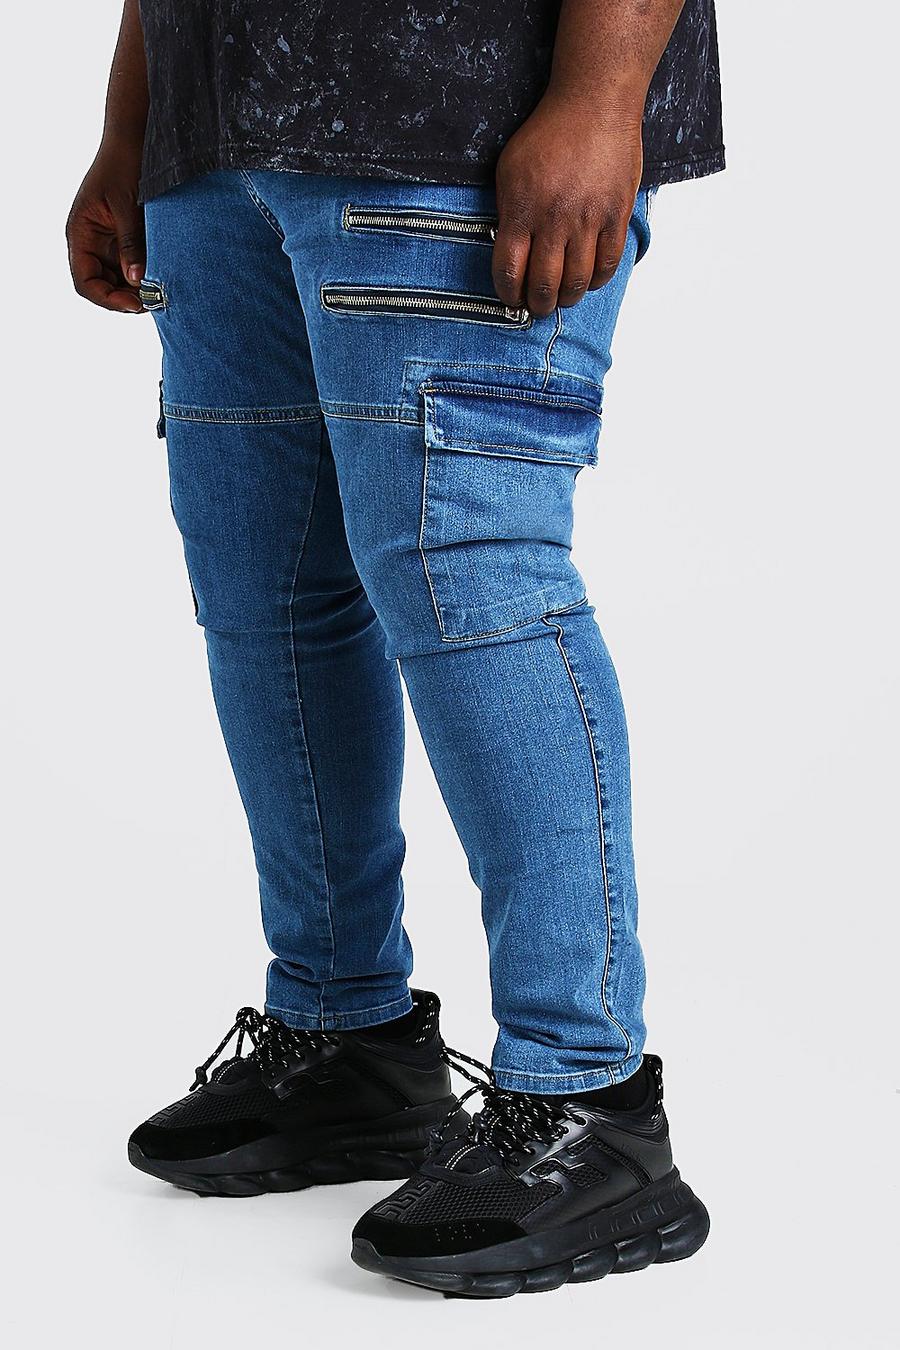 כחול ביניים מכנסי ג'ינס סופר סקיני בסגנון אופנוענים עם רוכסן לגברים גדולים וגבוהים image number 1